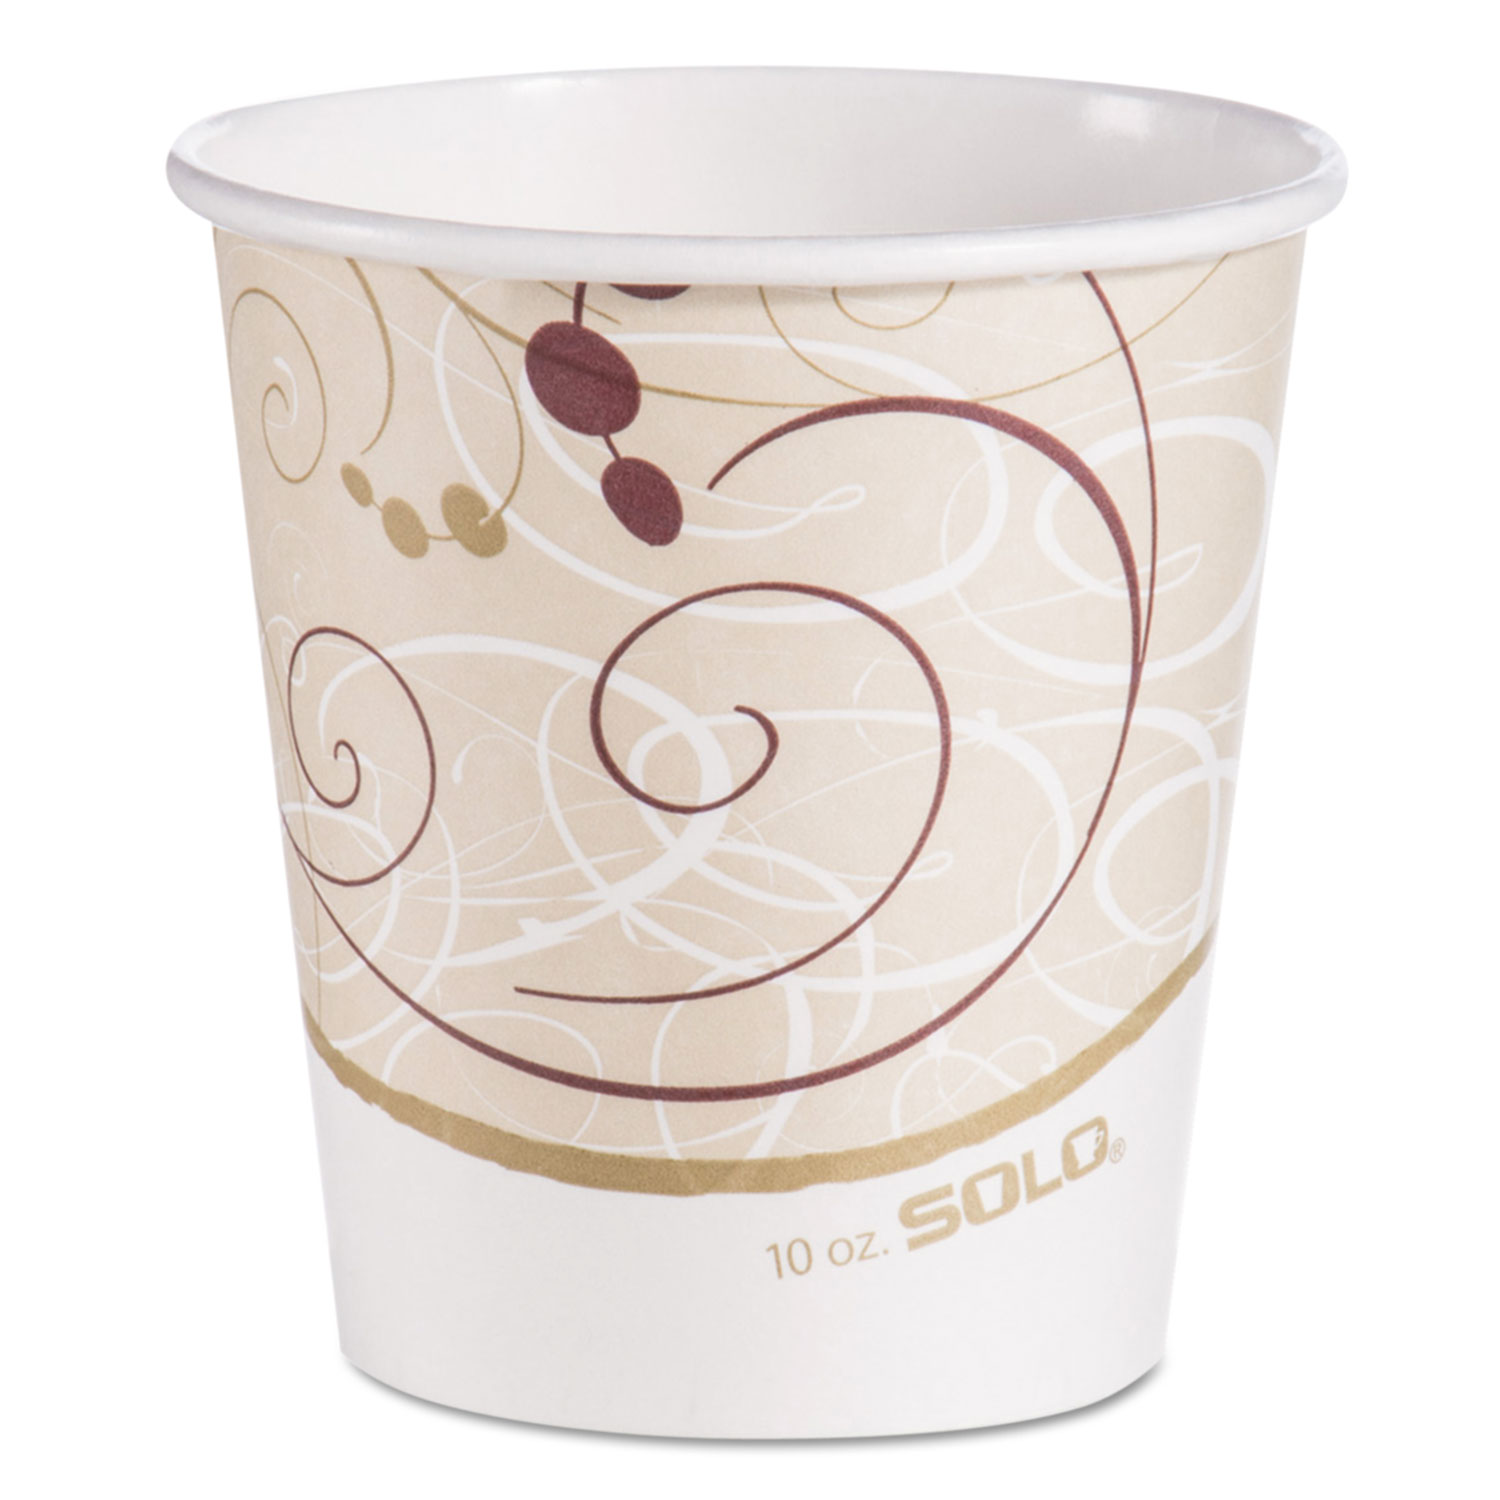  Dart 510SM Paper Hot Cups in Symphony Design, 10 oz, Beige/White/Red, 1000/Carton (SCC510SM) 